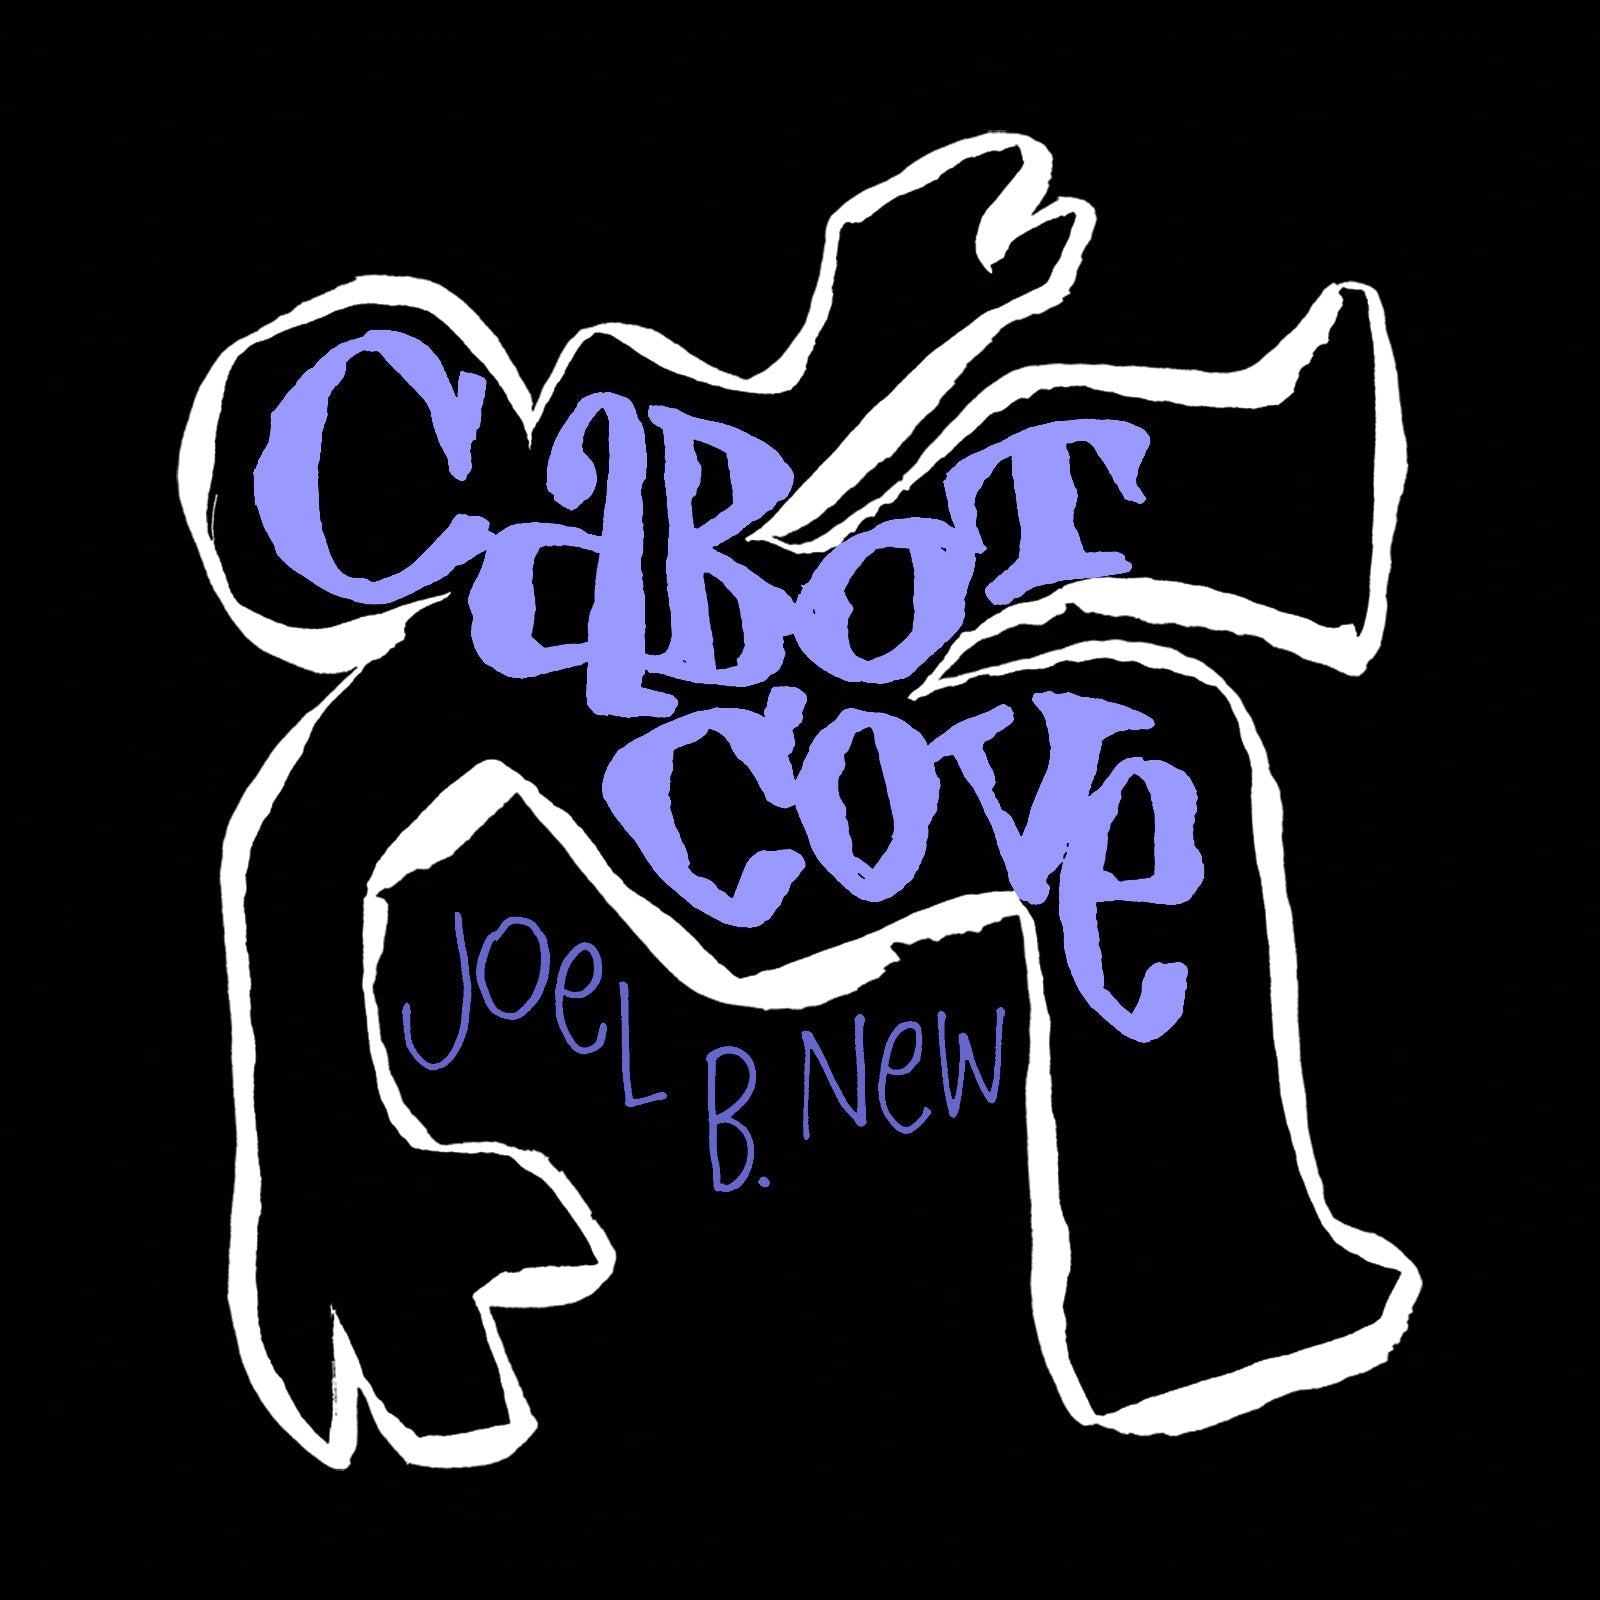 Joel B. New: Cabot Cove [MP3]